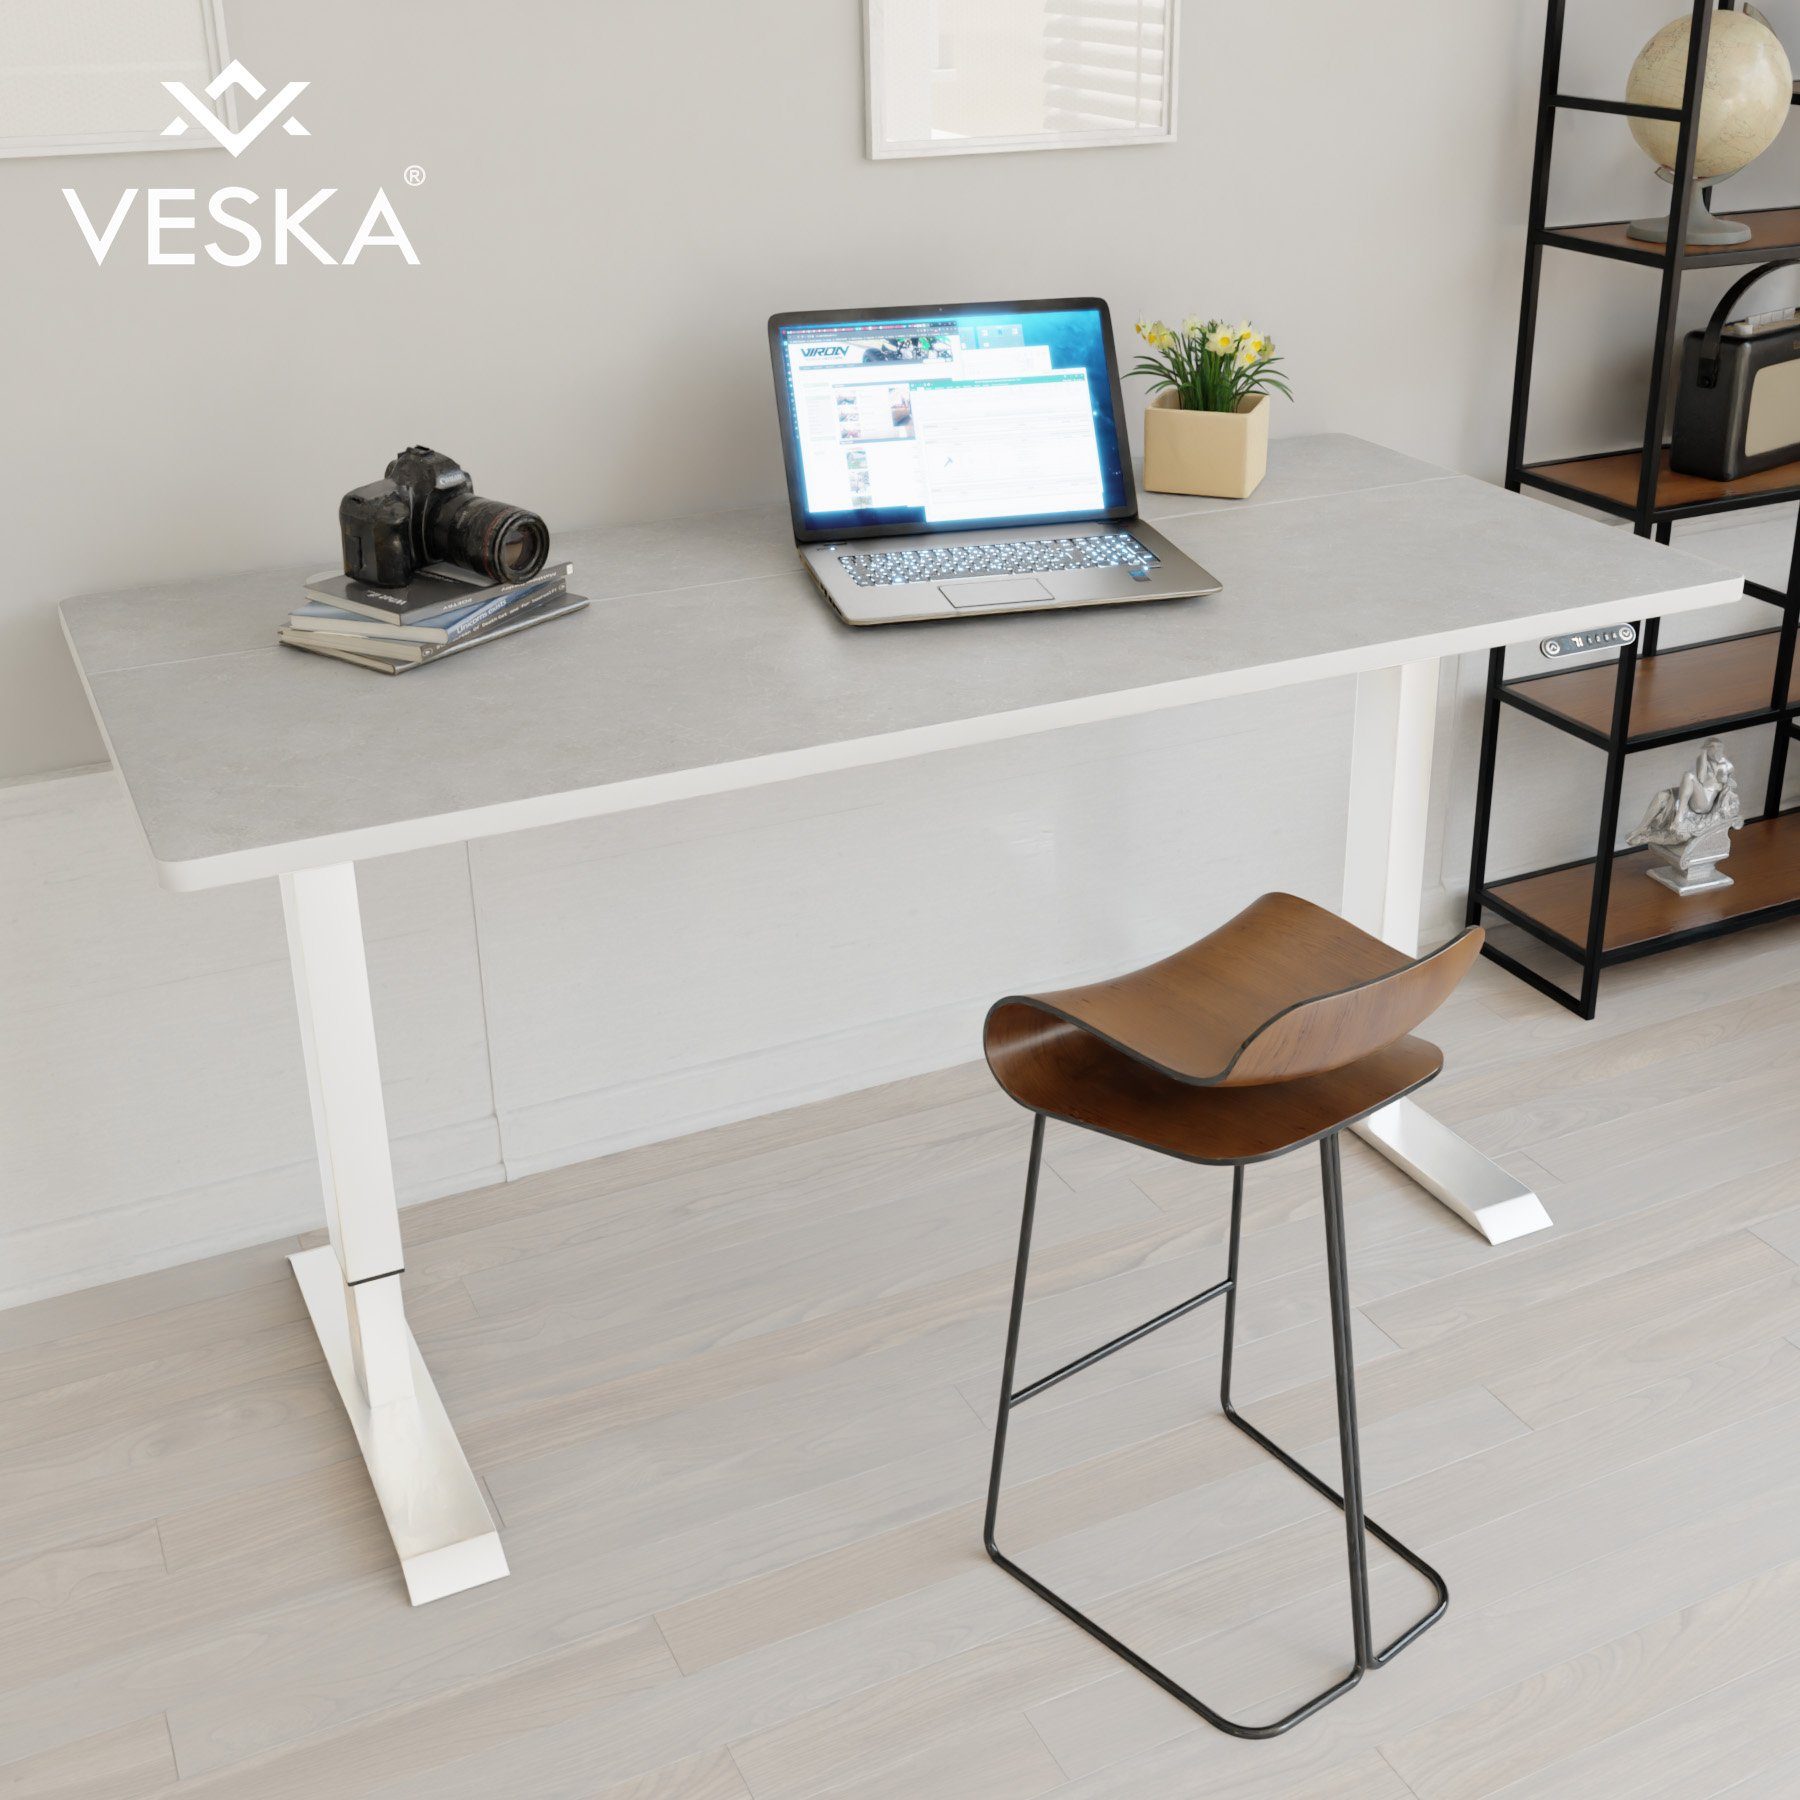 VESKA Schreibtisch Höhenverstellbar 140 x 70 cm - Bürotisch Elektrisch mit Touchscreen - Sitz- & Stehpult Home Office Weiß | Stein-Grau